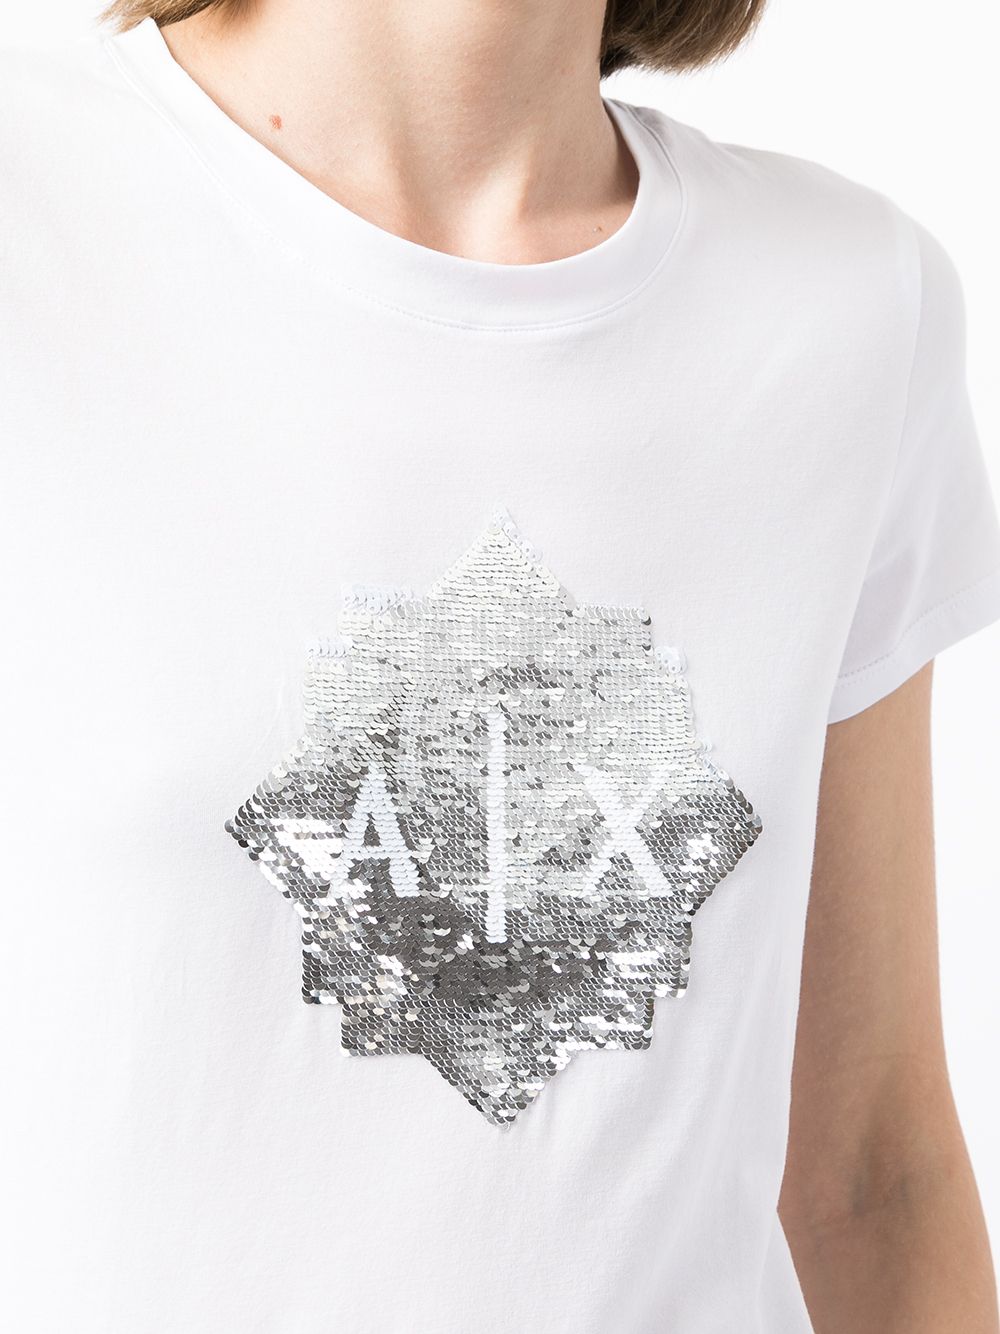 фото Armani exchange футболка с пайетками